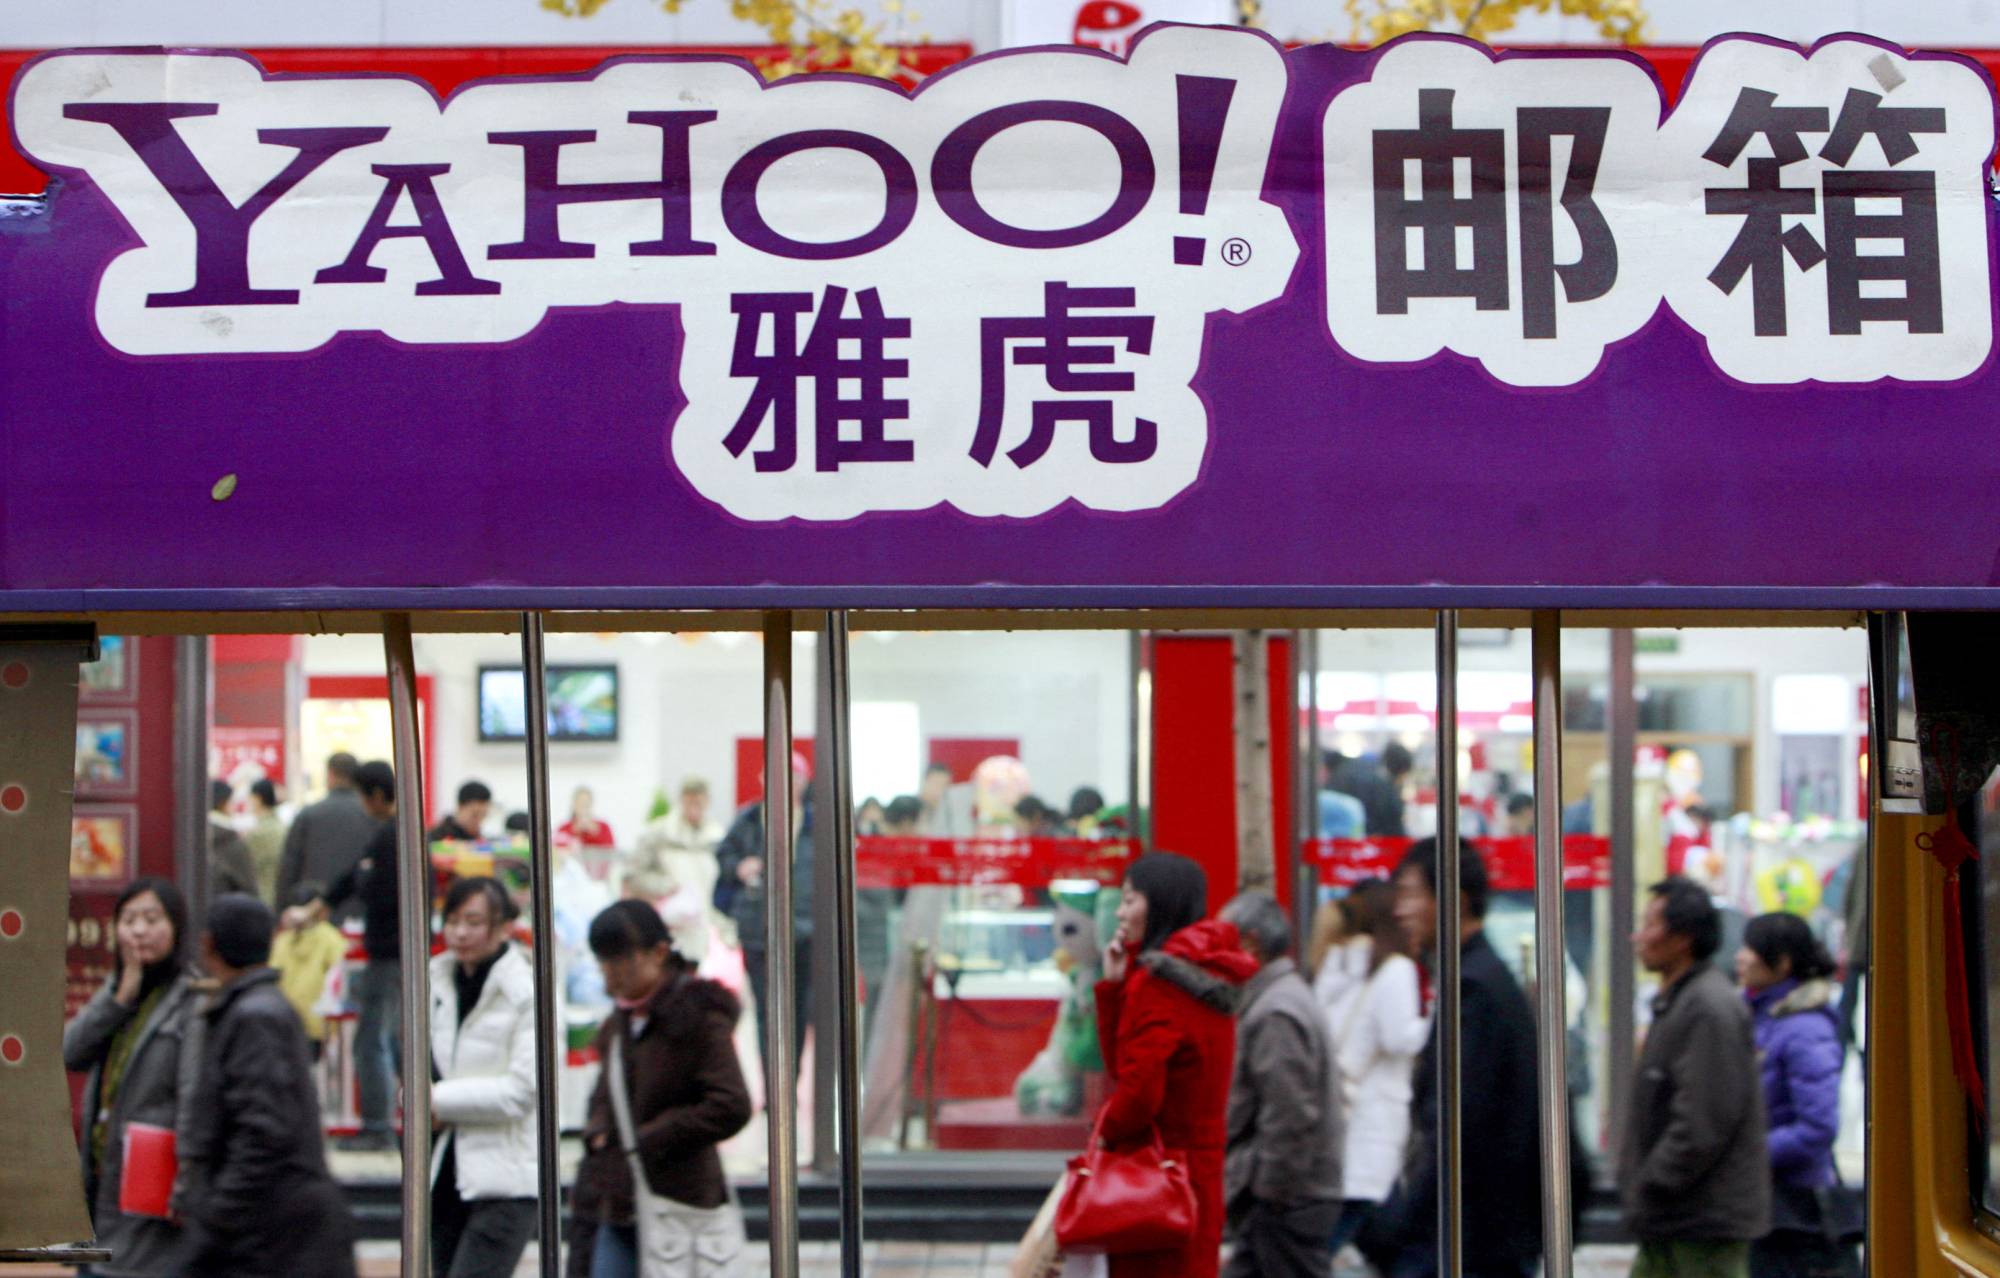 Quảng cáo của Yahoo! Trên đường phố Bắc Kinh vào năm 2007 - thời kỳ đỉnh cao của thương hiệu này